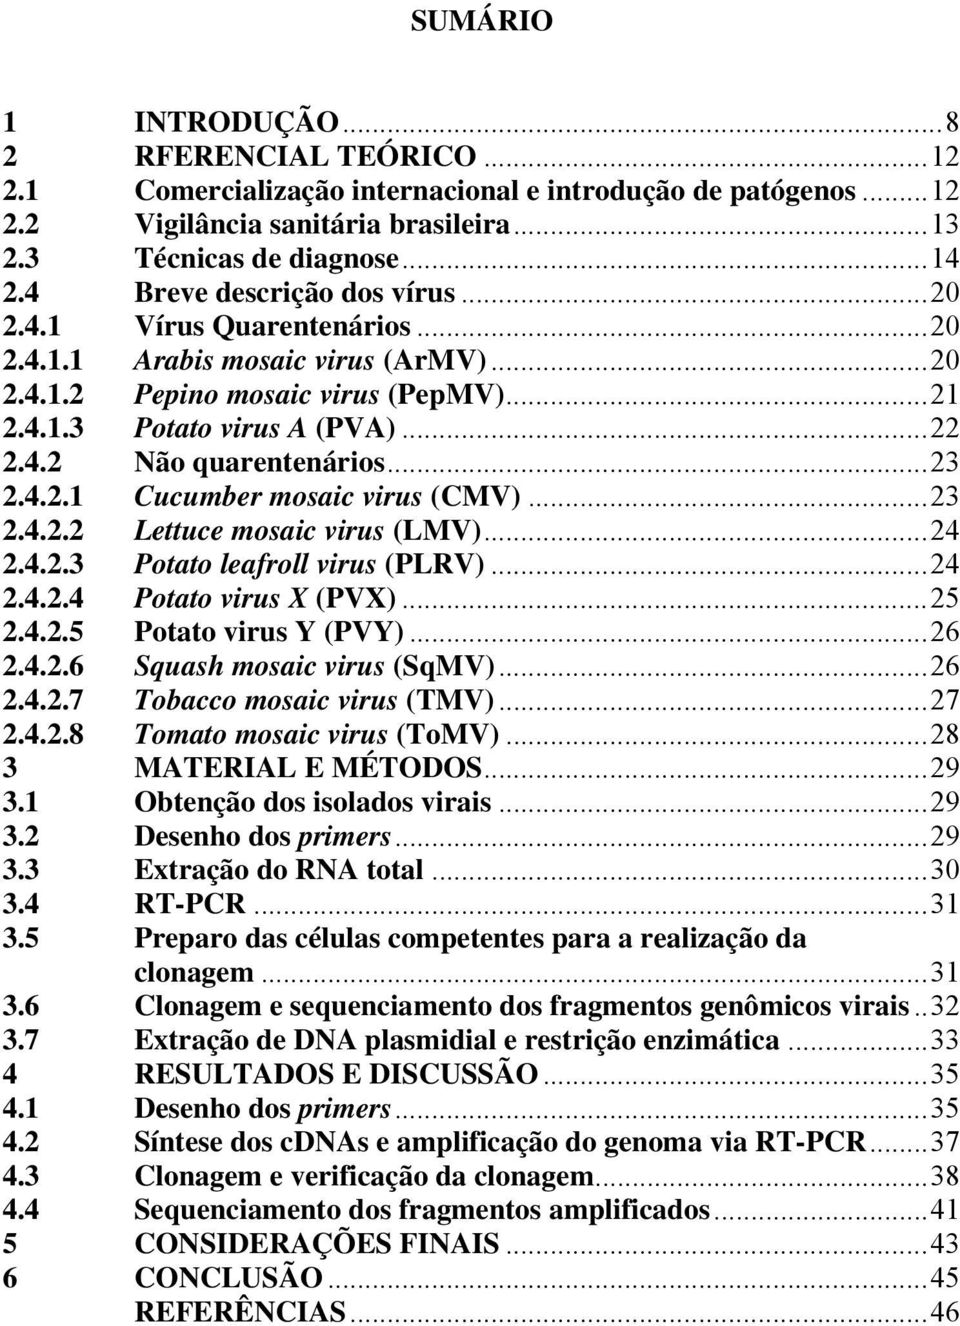 ..23 2.4.2.1 Cucumber mosaic virus (CMV)...23 2.4.2.2 Lettuce mosaic virus (LMV)...24 2.4.2.3 Potato leafroll virus (PLRV)...24 2.4.2.4 Potato virus X (PVX)...25 2.4.2.5 Potato virus Y (PVY)...26 2.4.2.6 Squash mosaic virus (SqMV).